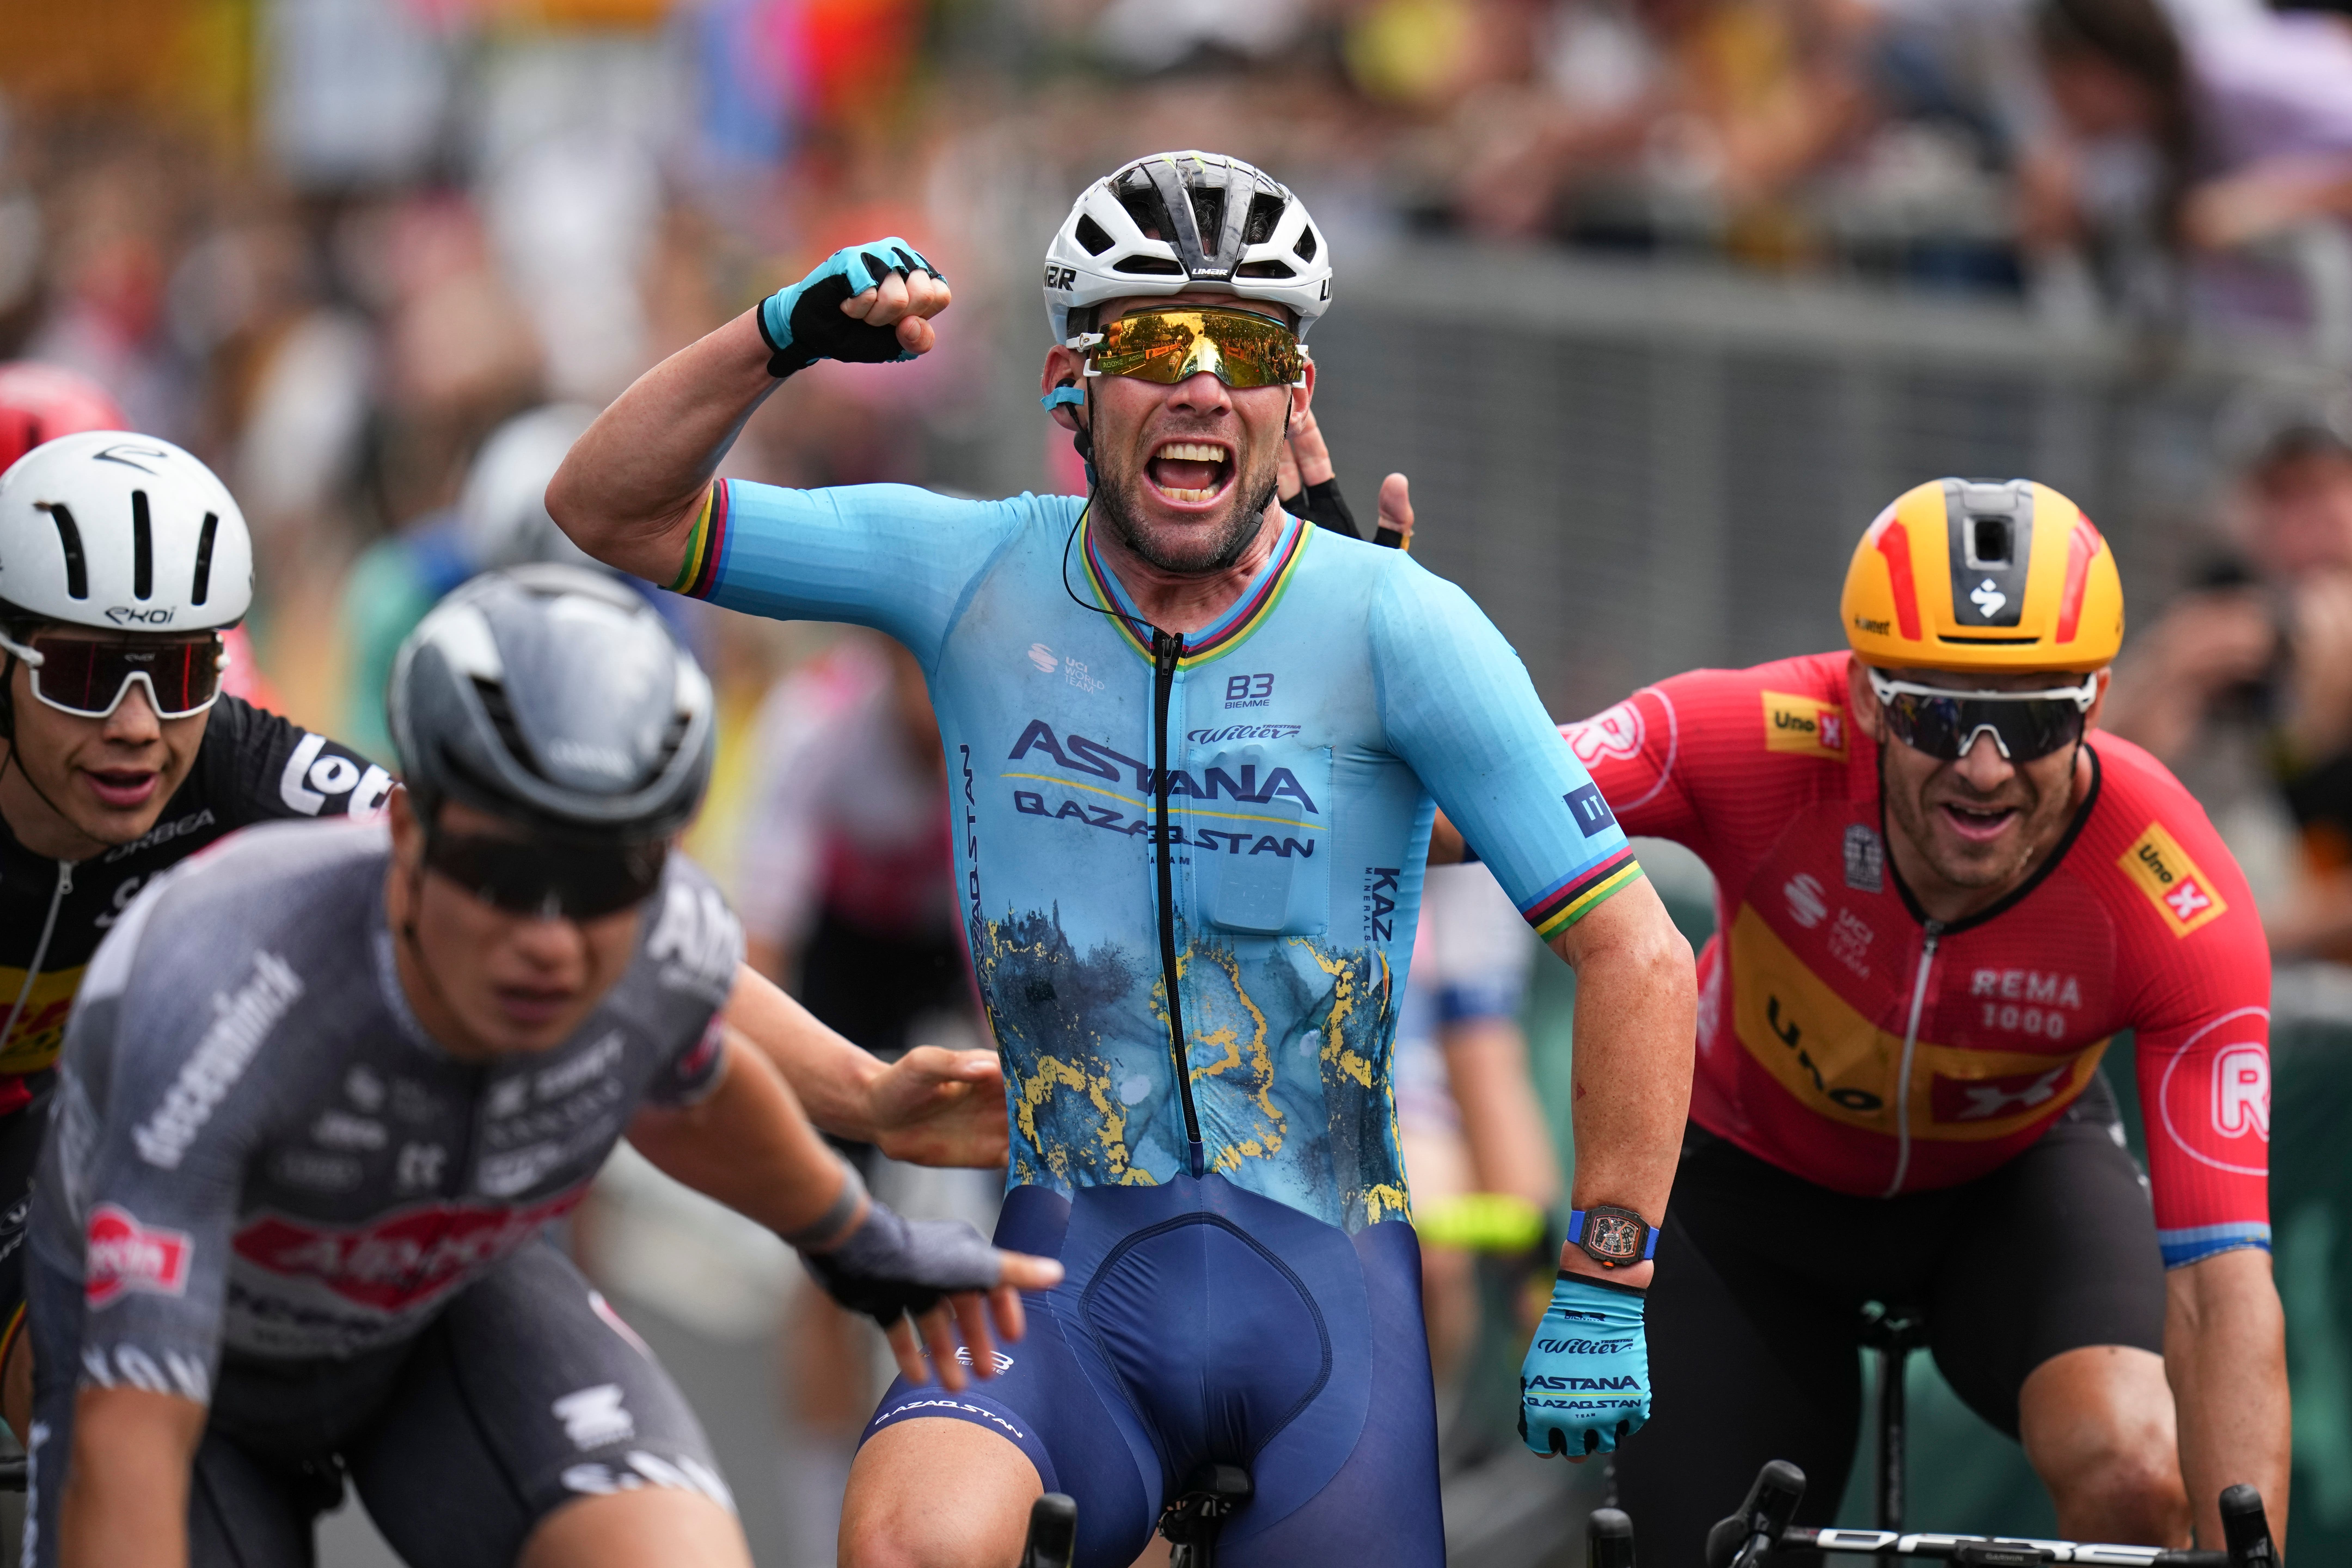 Mark Cavendish won a record 35th Tour de France stage